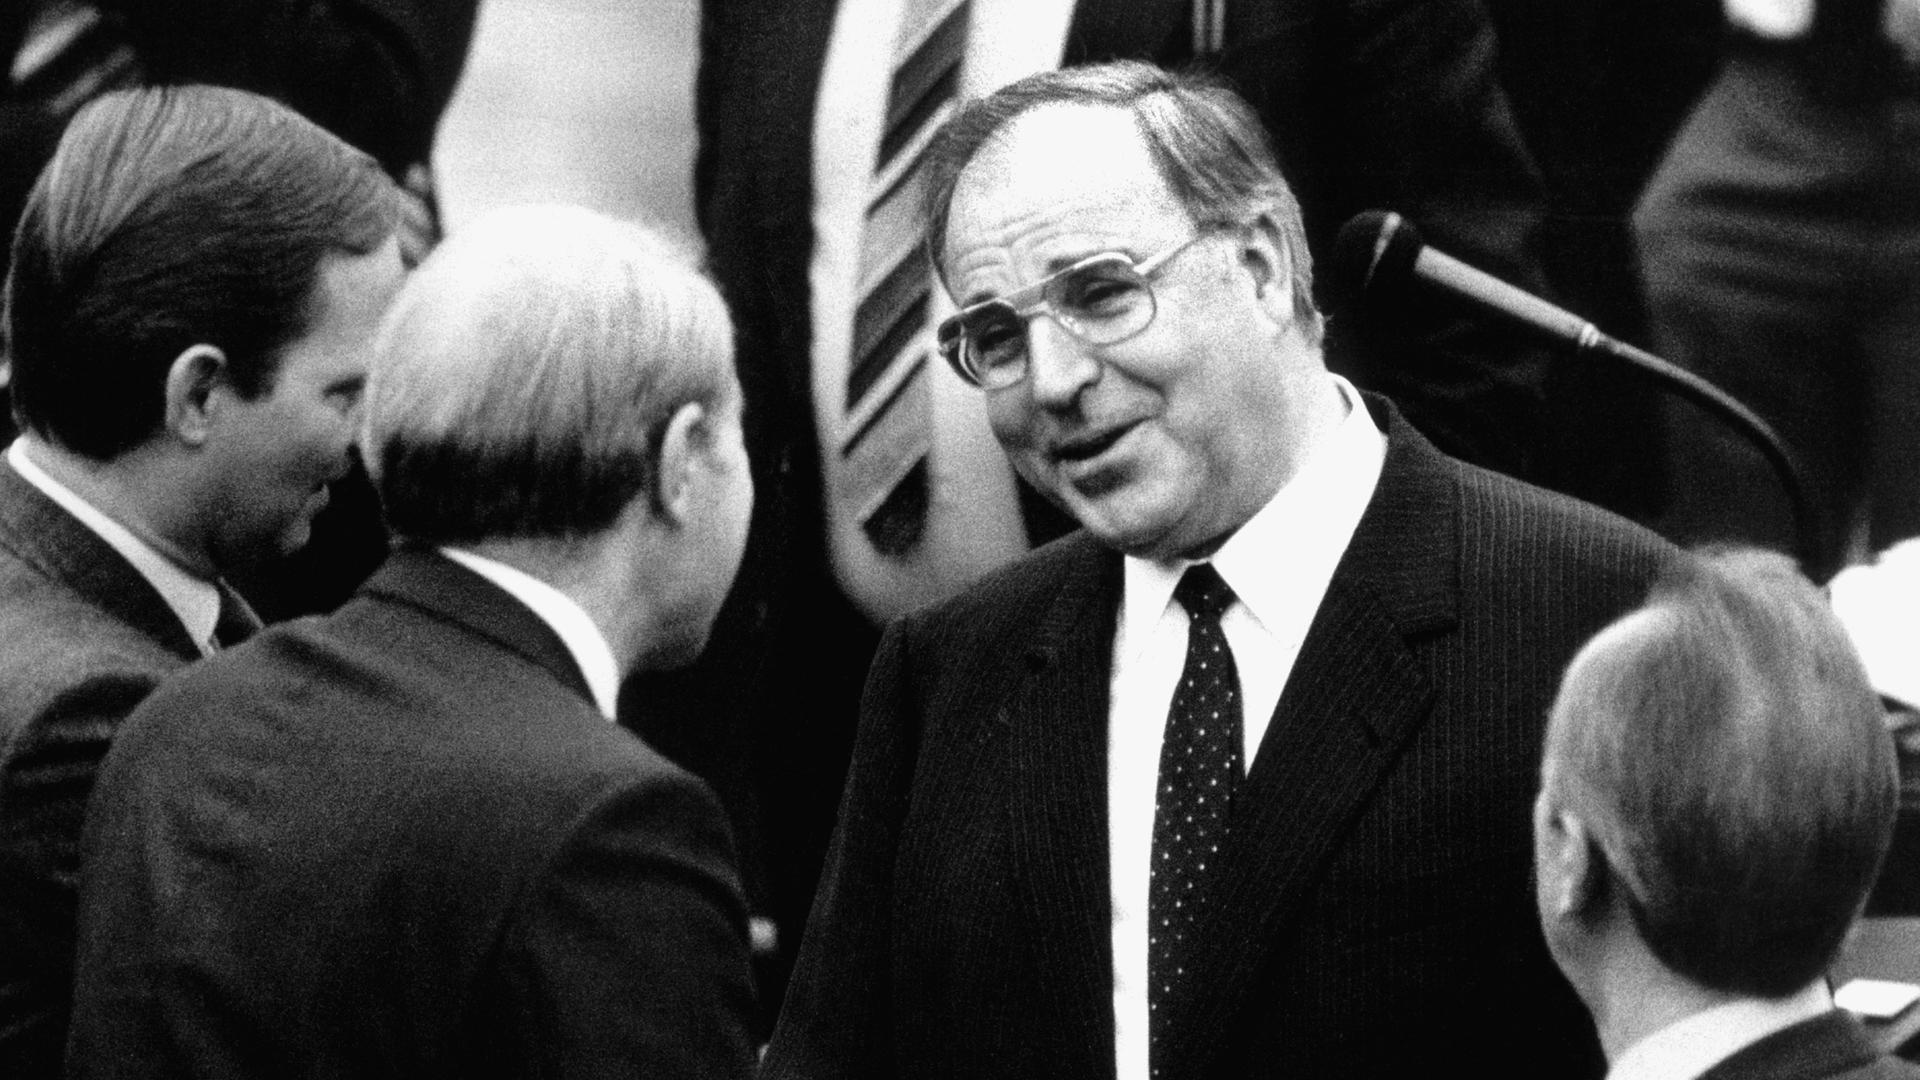  CDU-Bundeskanzler Helmut Kohl (Bildmitte) am 17.12.1982 im Bundestag im Gespräch mit Fraktionskollegen vor der Abstimmung über die Vertrauensfrage.